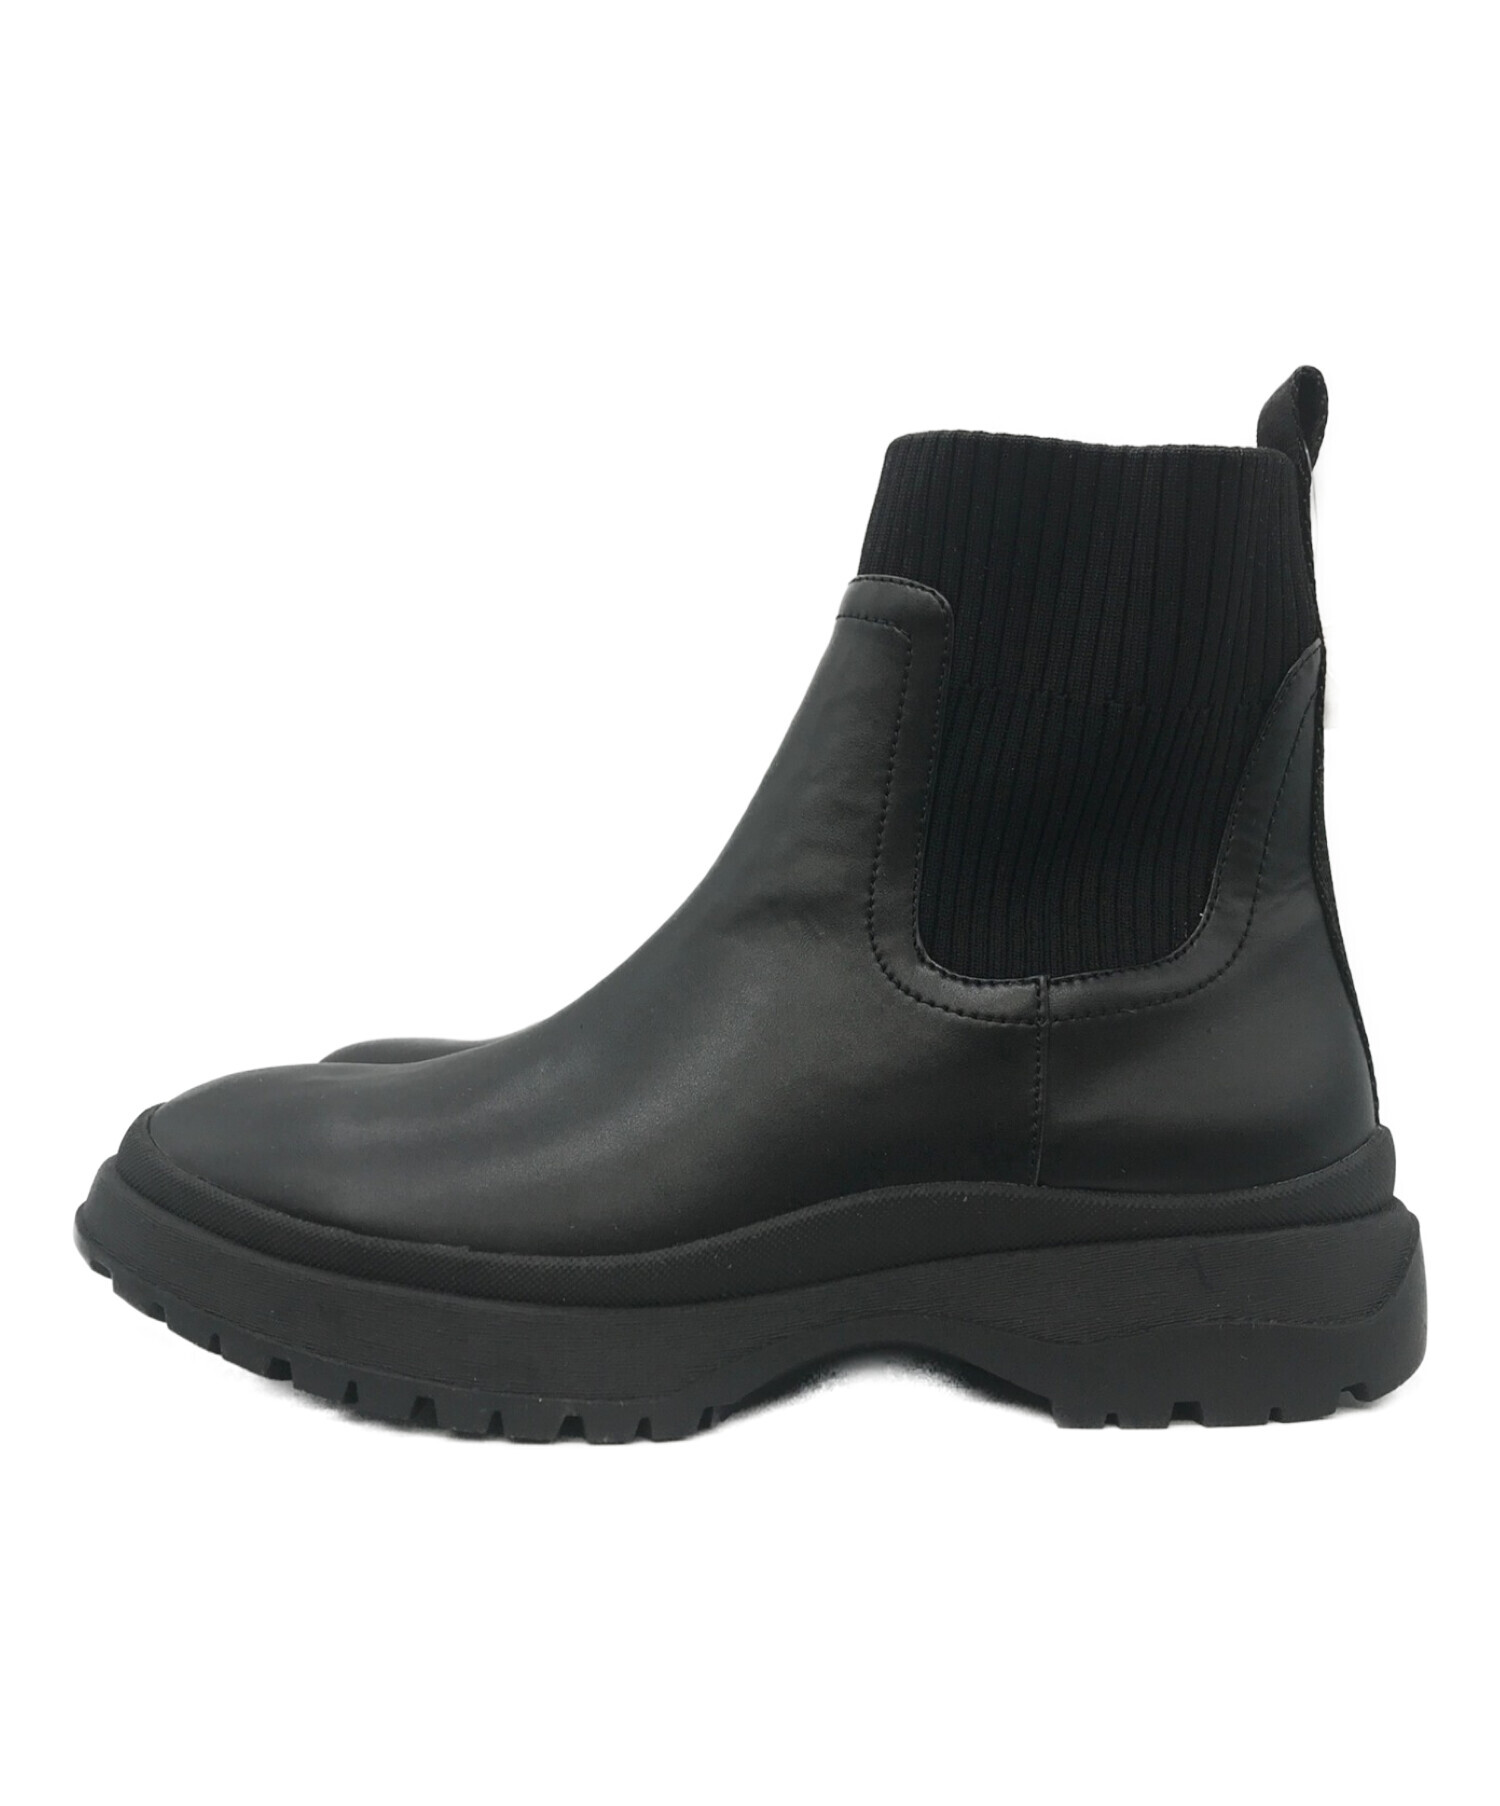 nouer (ヌエール) ソックスショートブーツ ブラック サイズ:39 未使用品